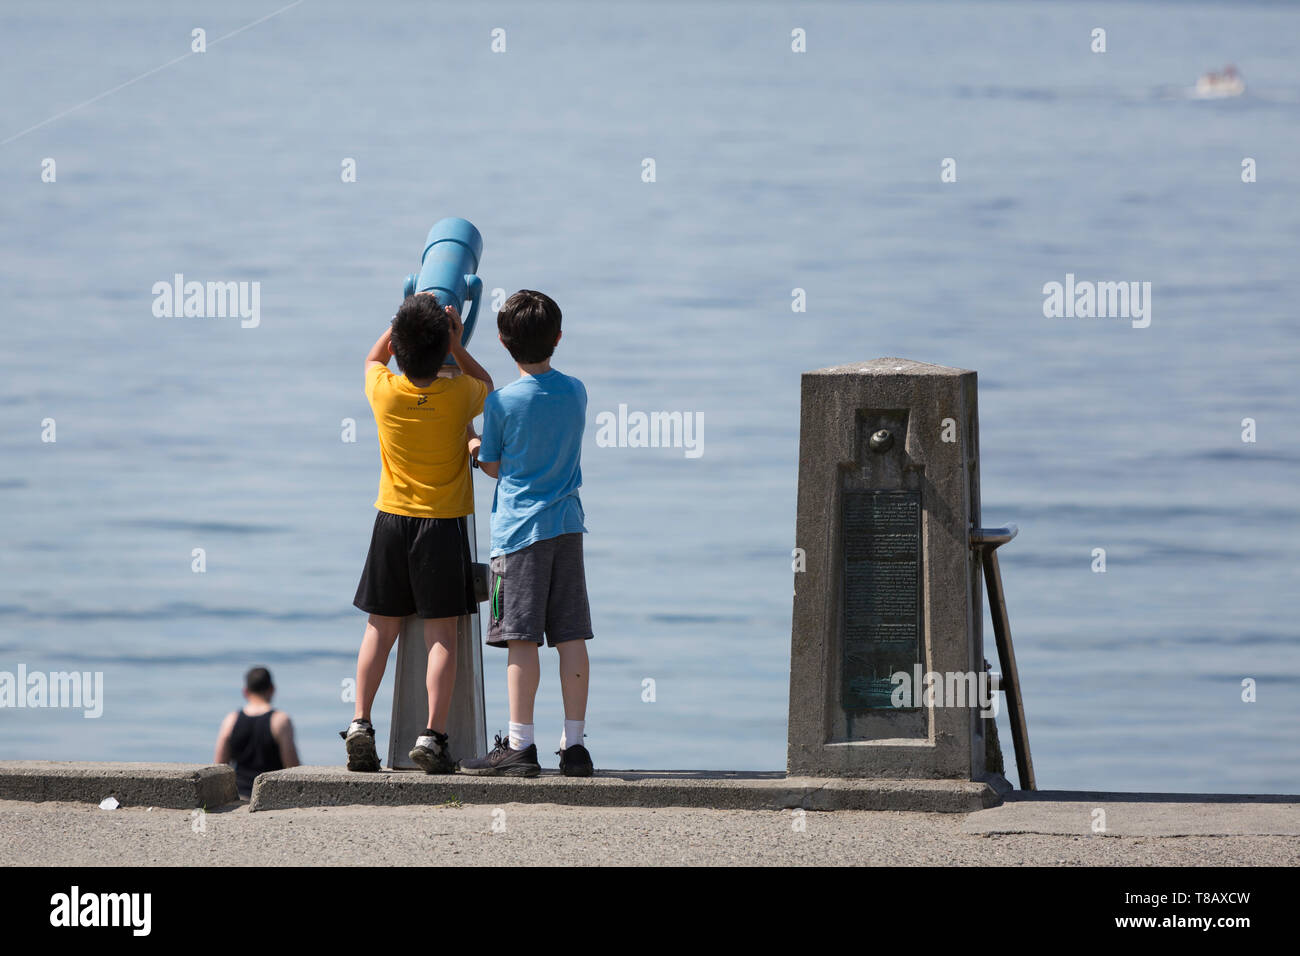 Seattle, Washington: due ragazzi di noi un monoculare per visualizzare le barche che passa lungo la spiaggia di Alki in West Seattle come la città si affaccia record di calore per il secondo giorno consecutivo. Foto Stock